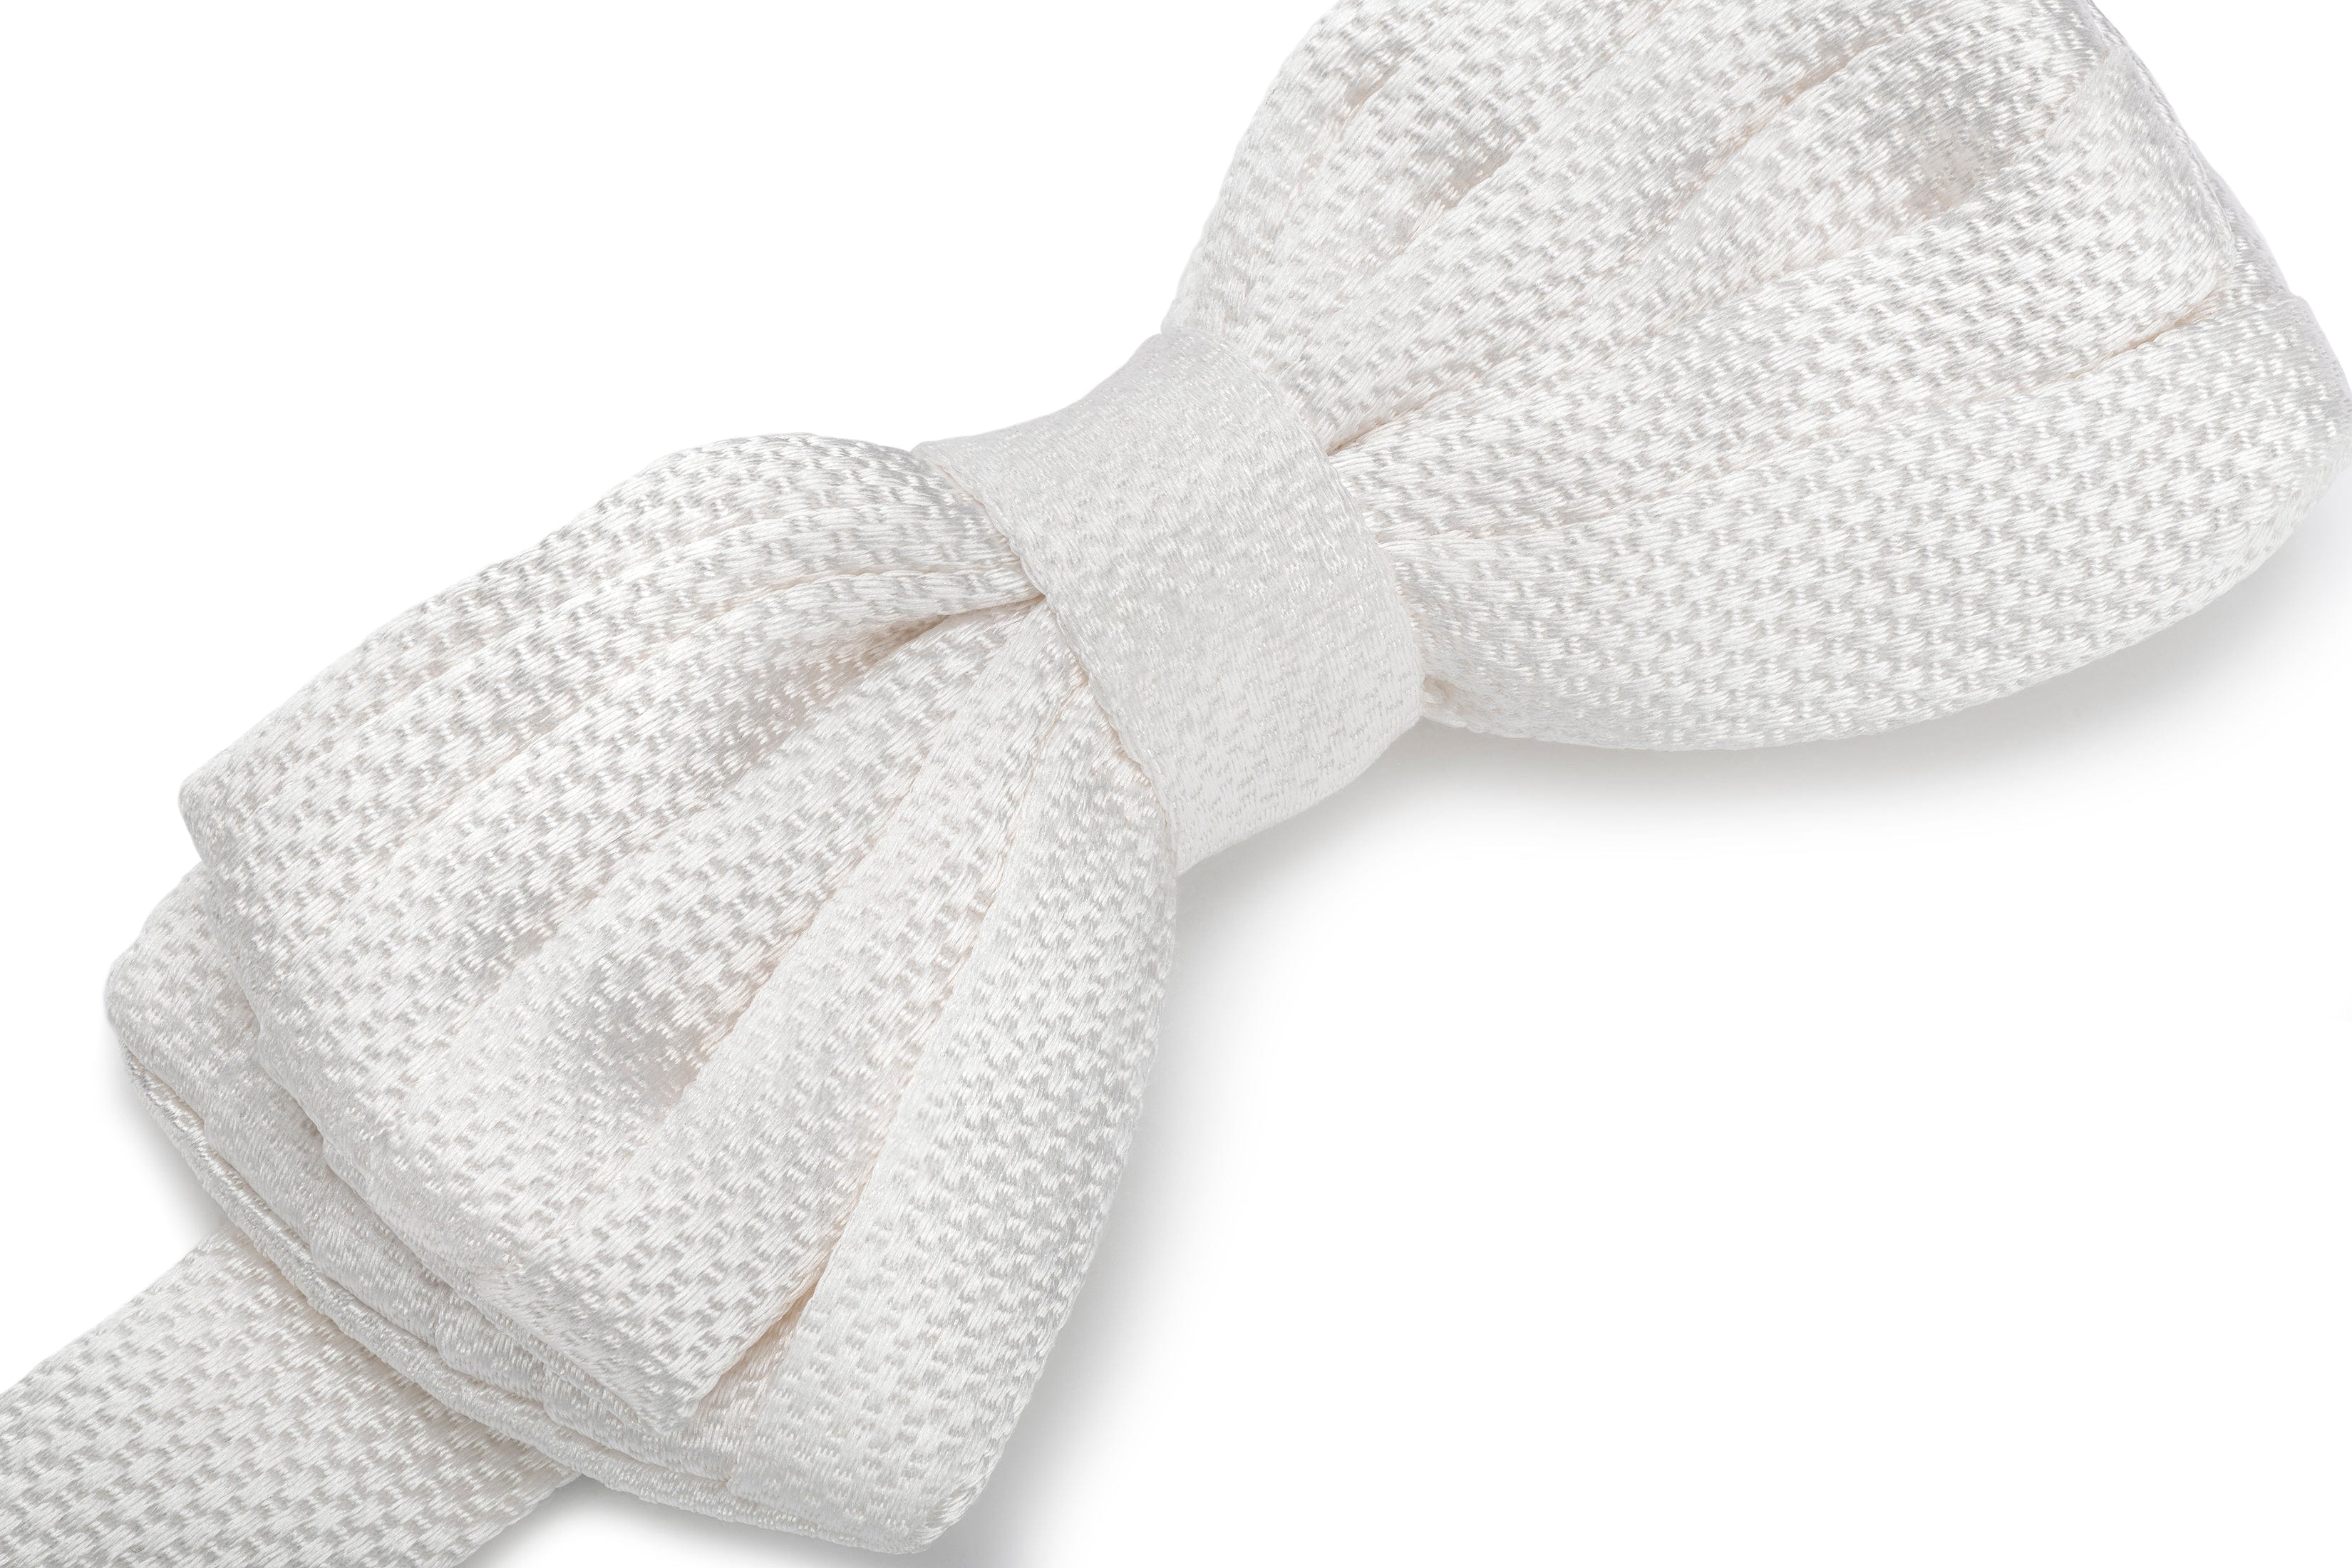 Rose Blanche Bow Tie (100% Silk, White)